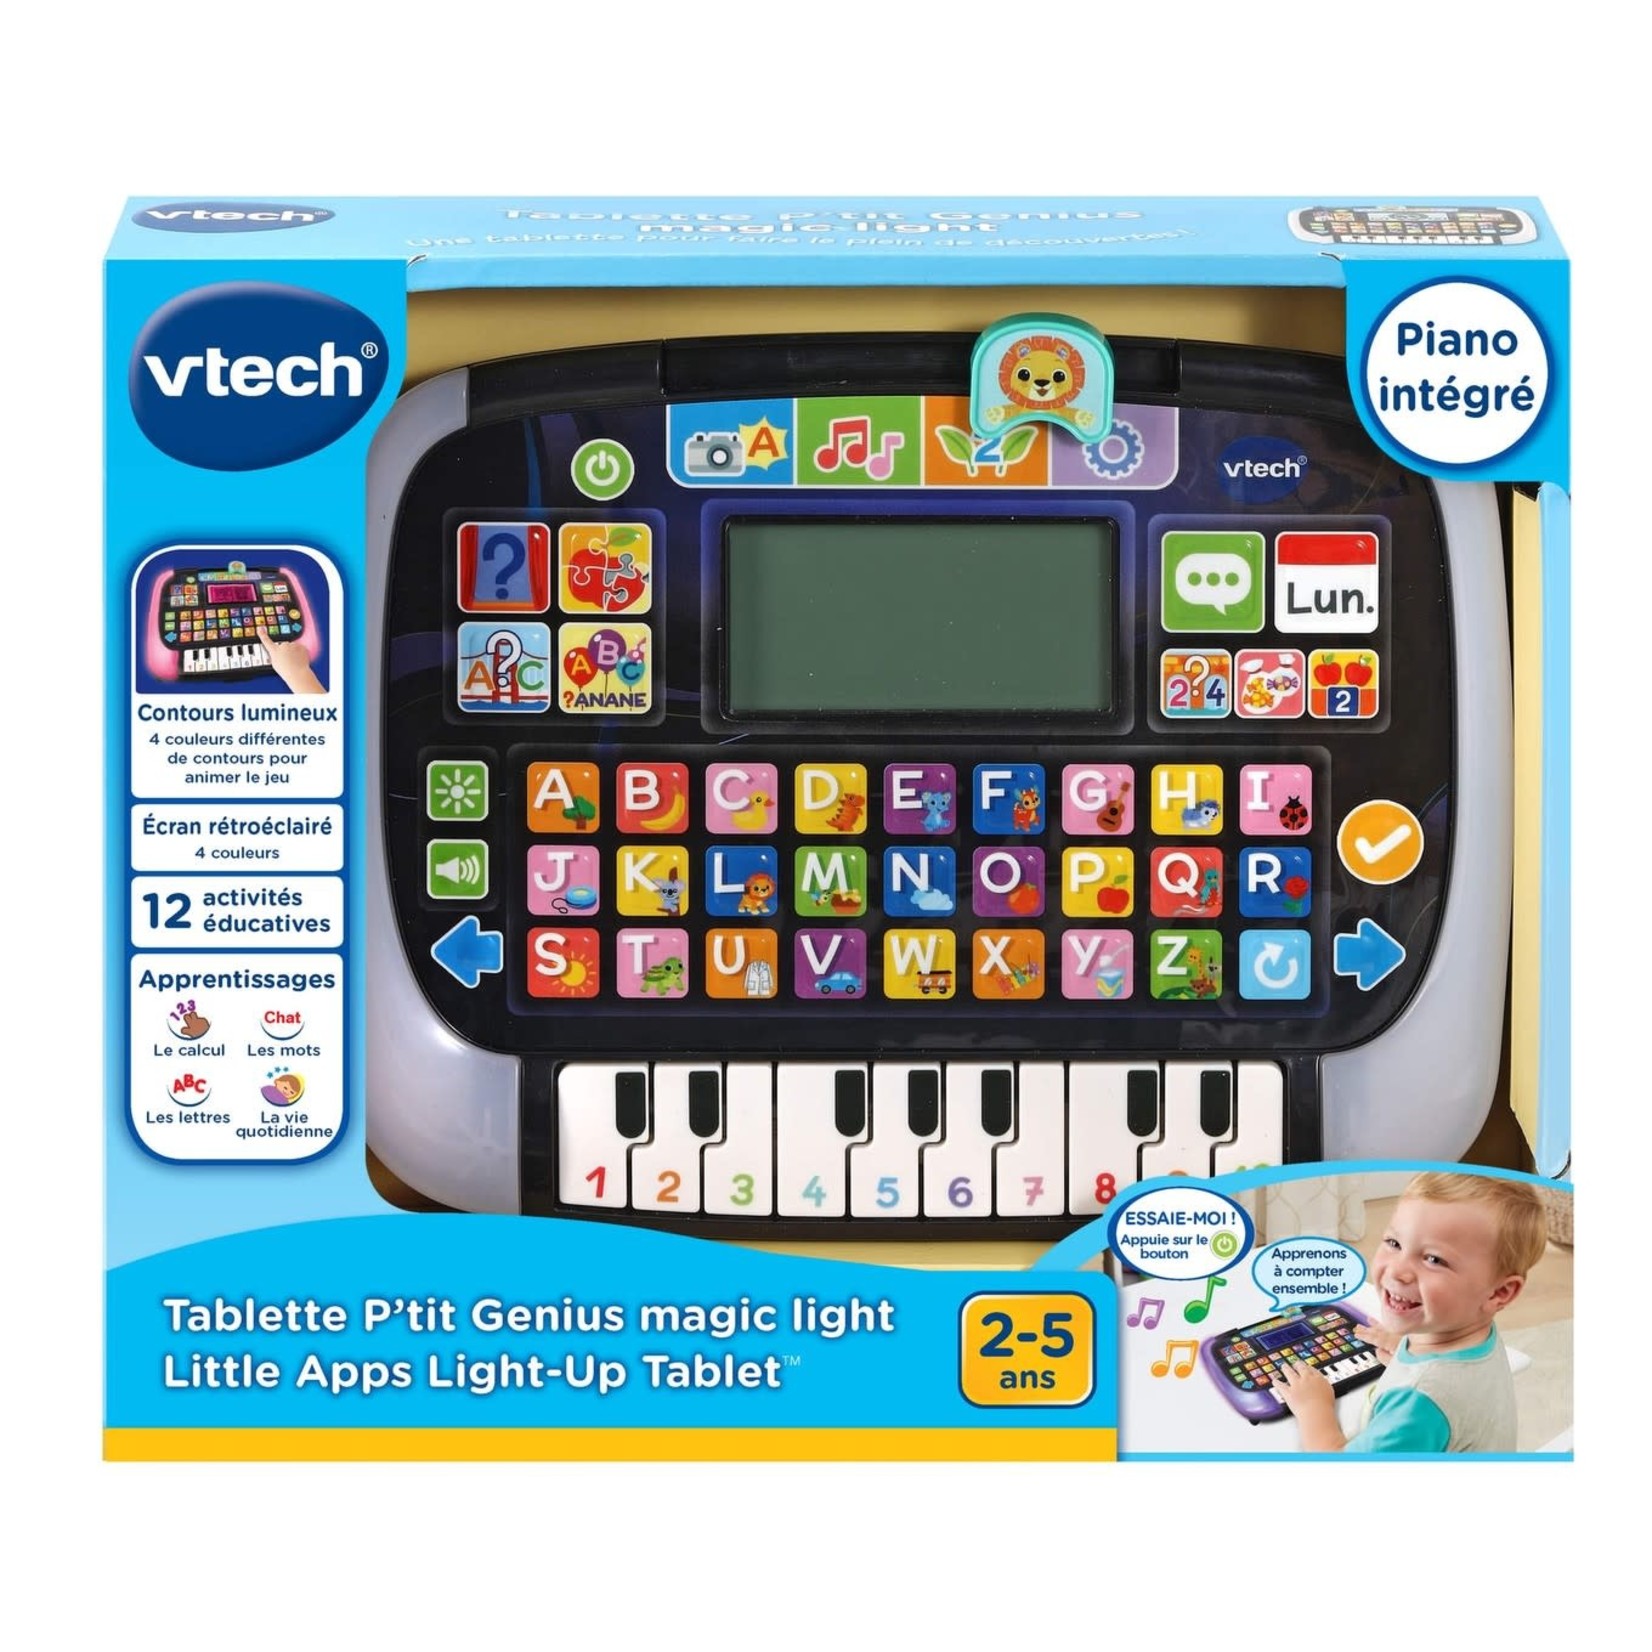 VTech VTech - Tablette P'tit Genius Magic light